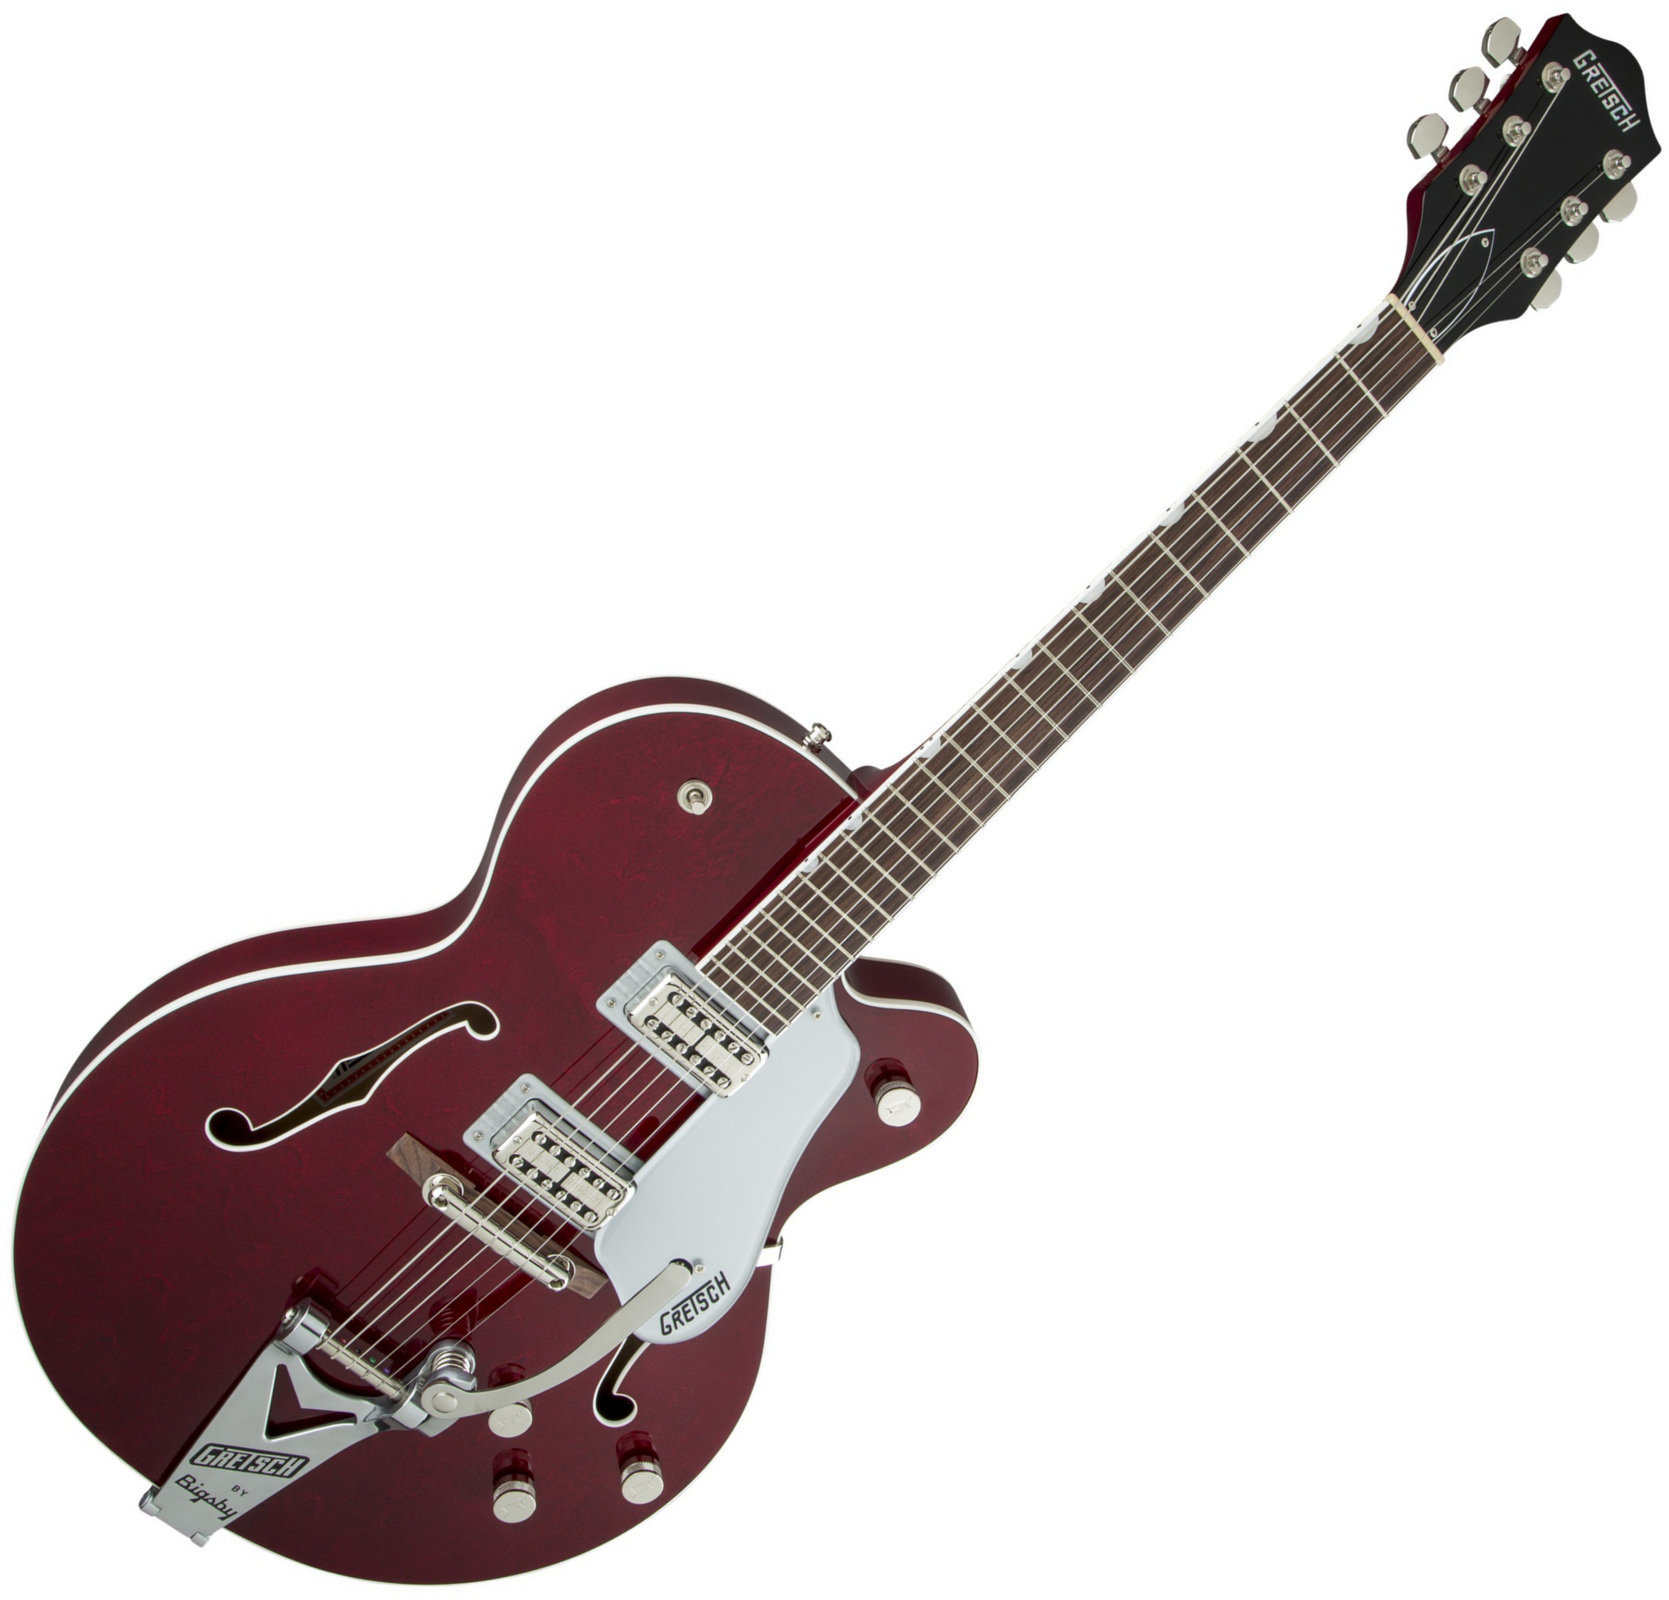 Semi-akoestische gitaar Gretsch G6119 Professional Players Edition Tennessee Rose RW Dark Cherry Stain